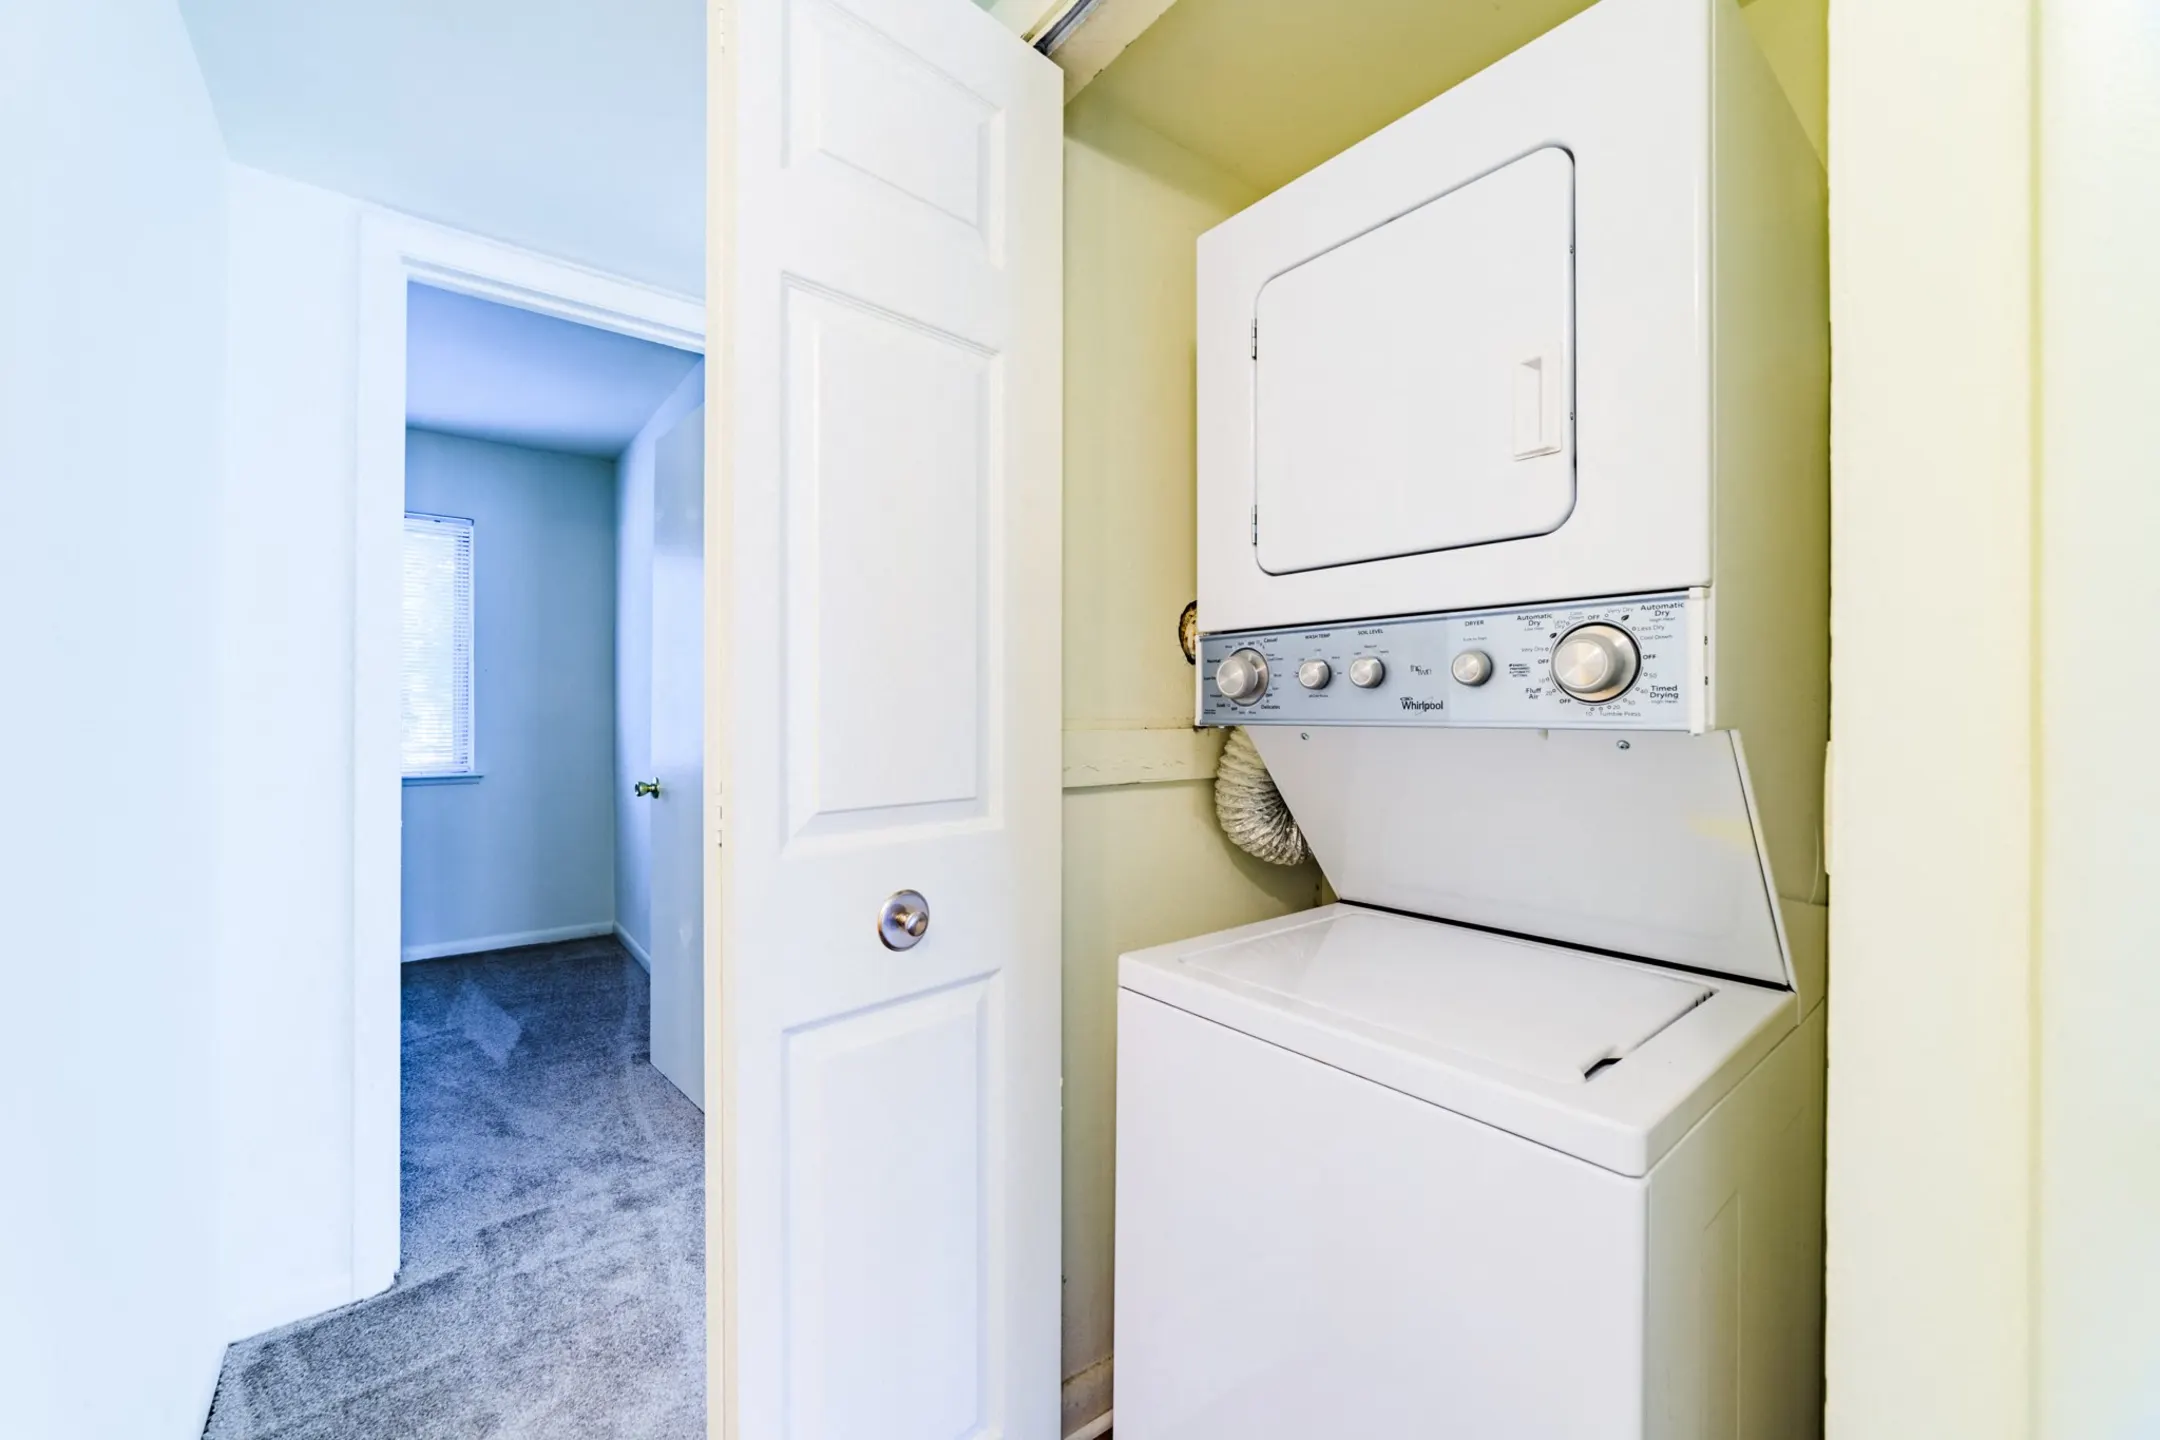 Bathroom - Woodscape Apartments - Newport News, VA